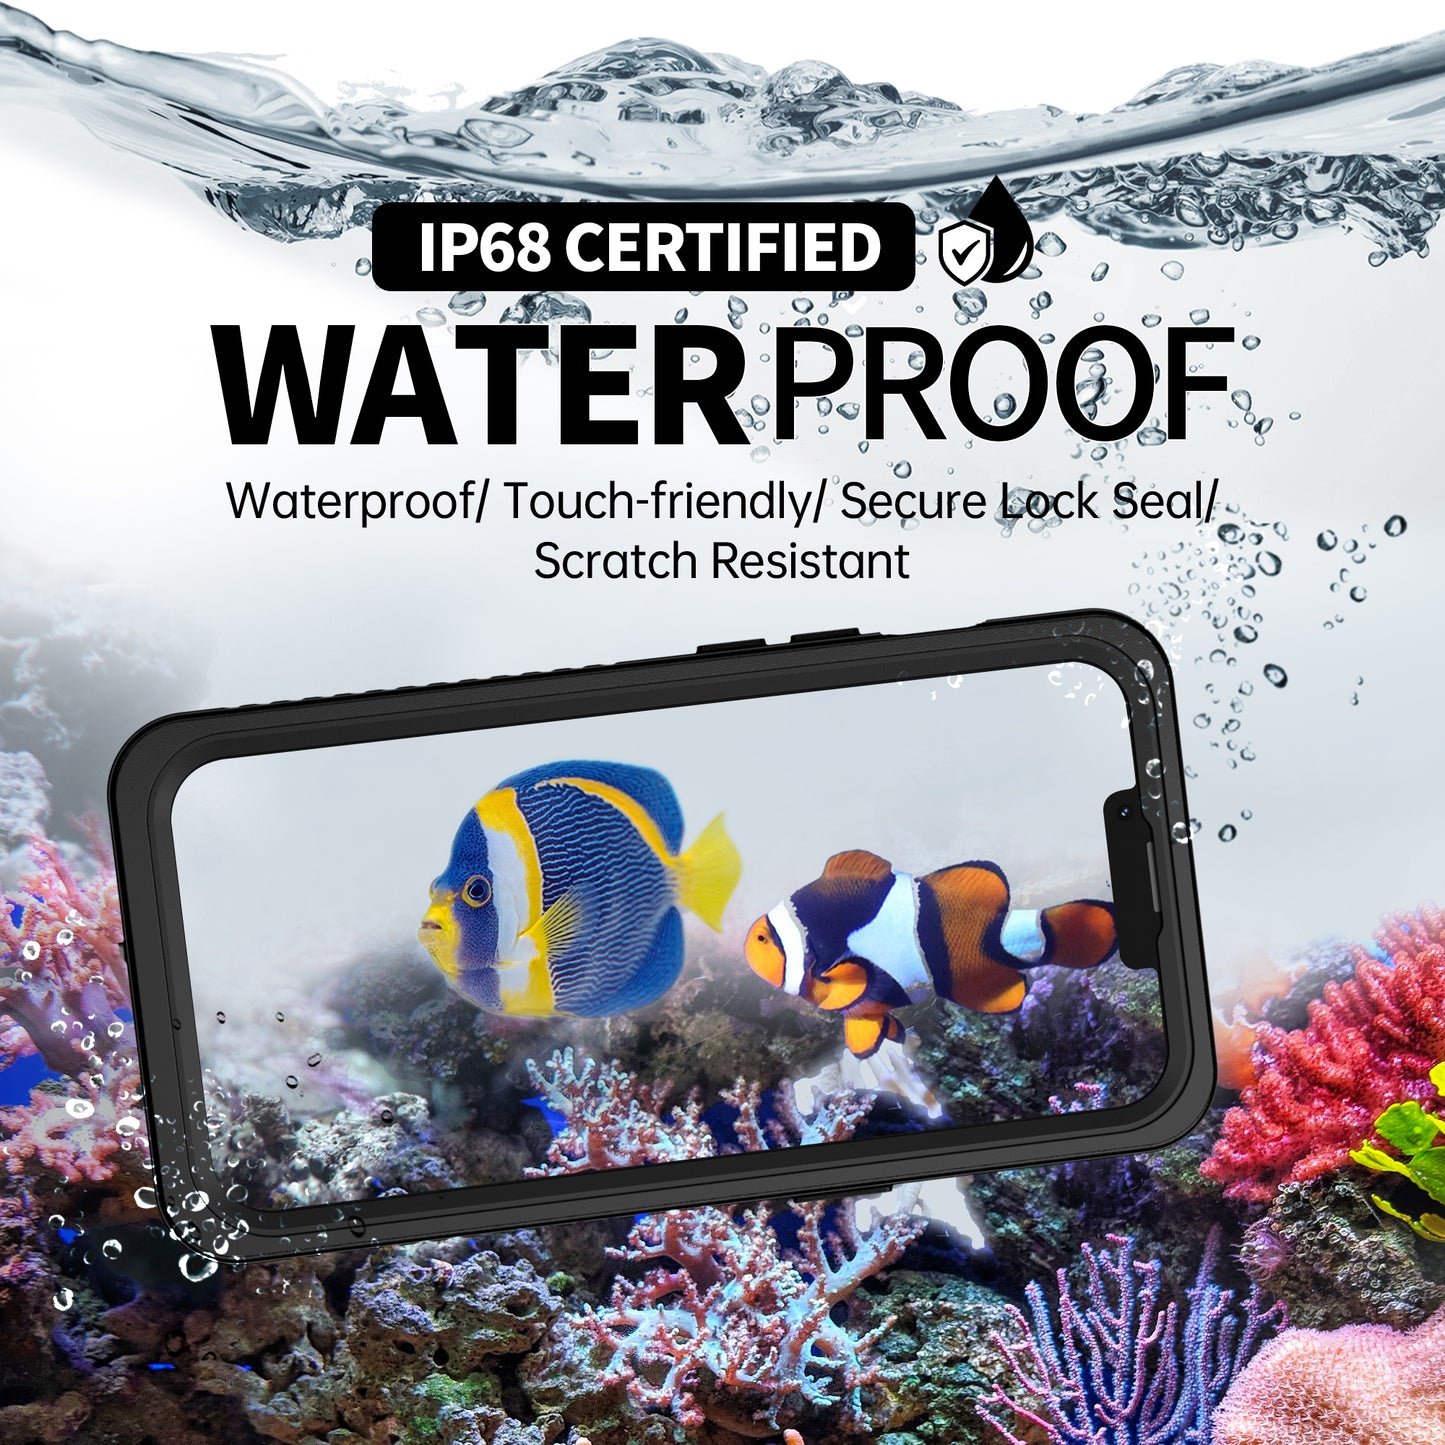 
                  
                    Apple iPhone 13 Series — FSN Series Waterproof Phone Case
                  
                